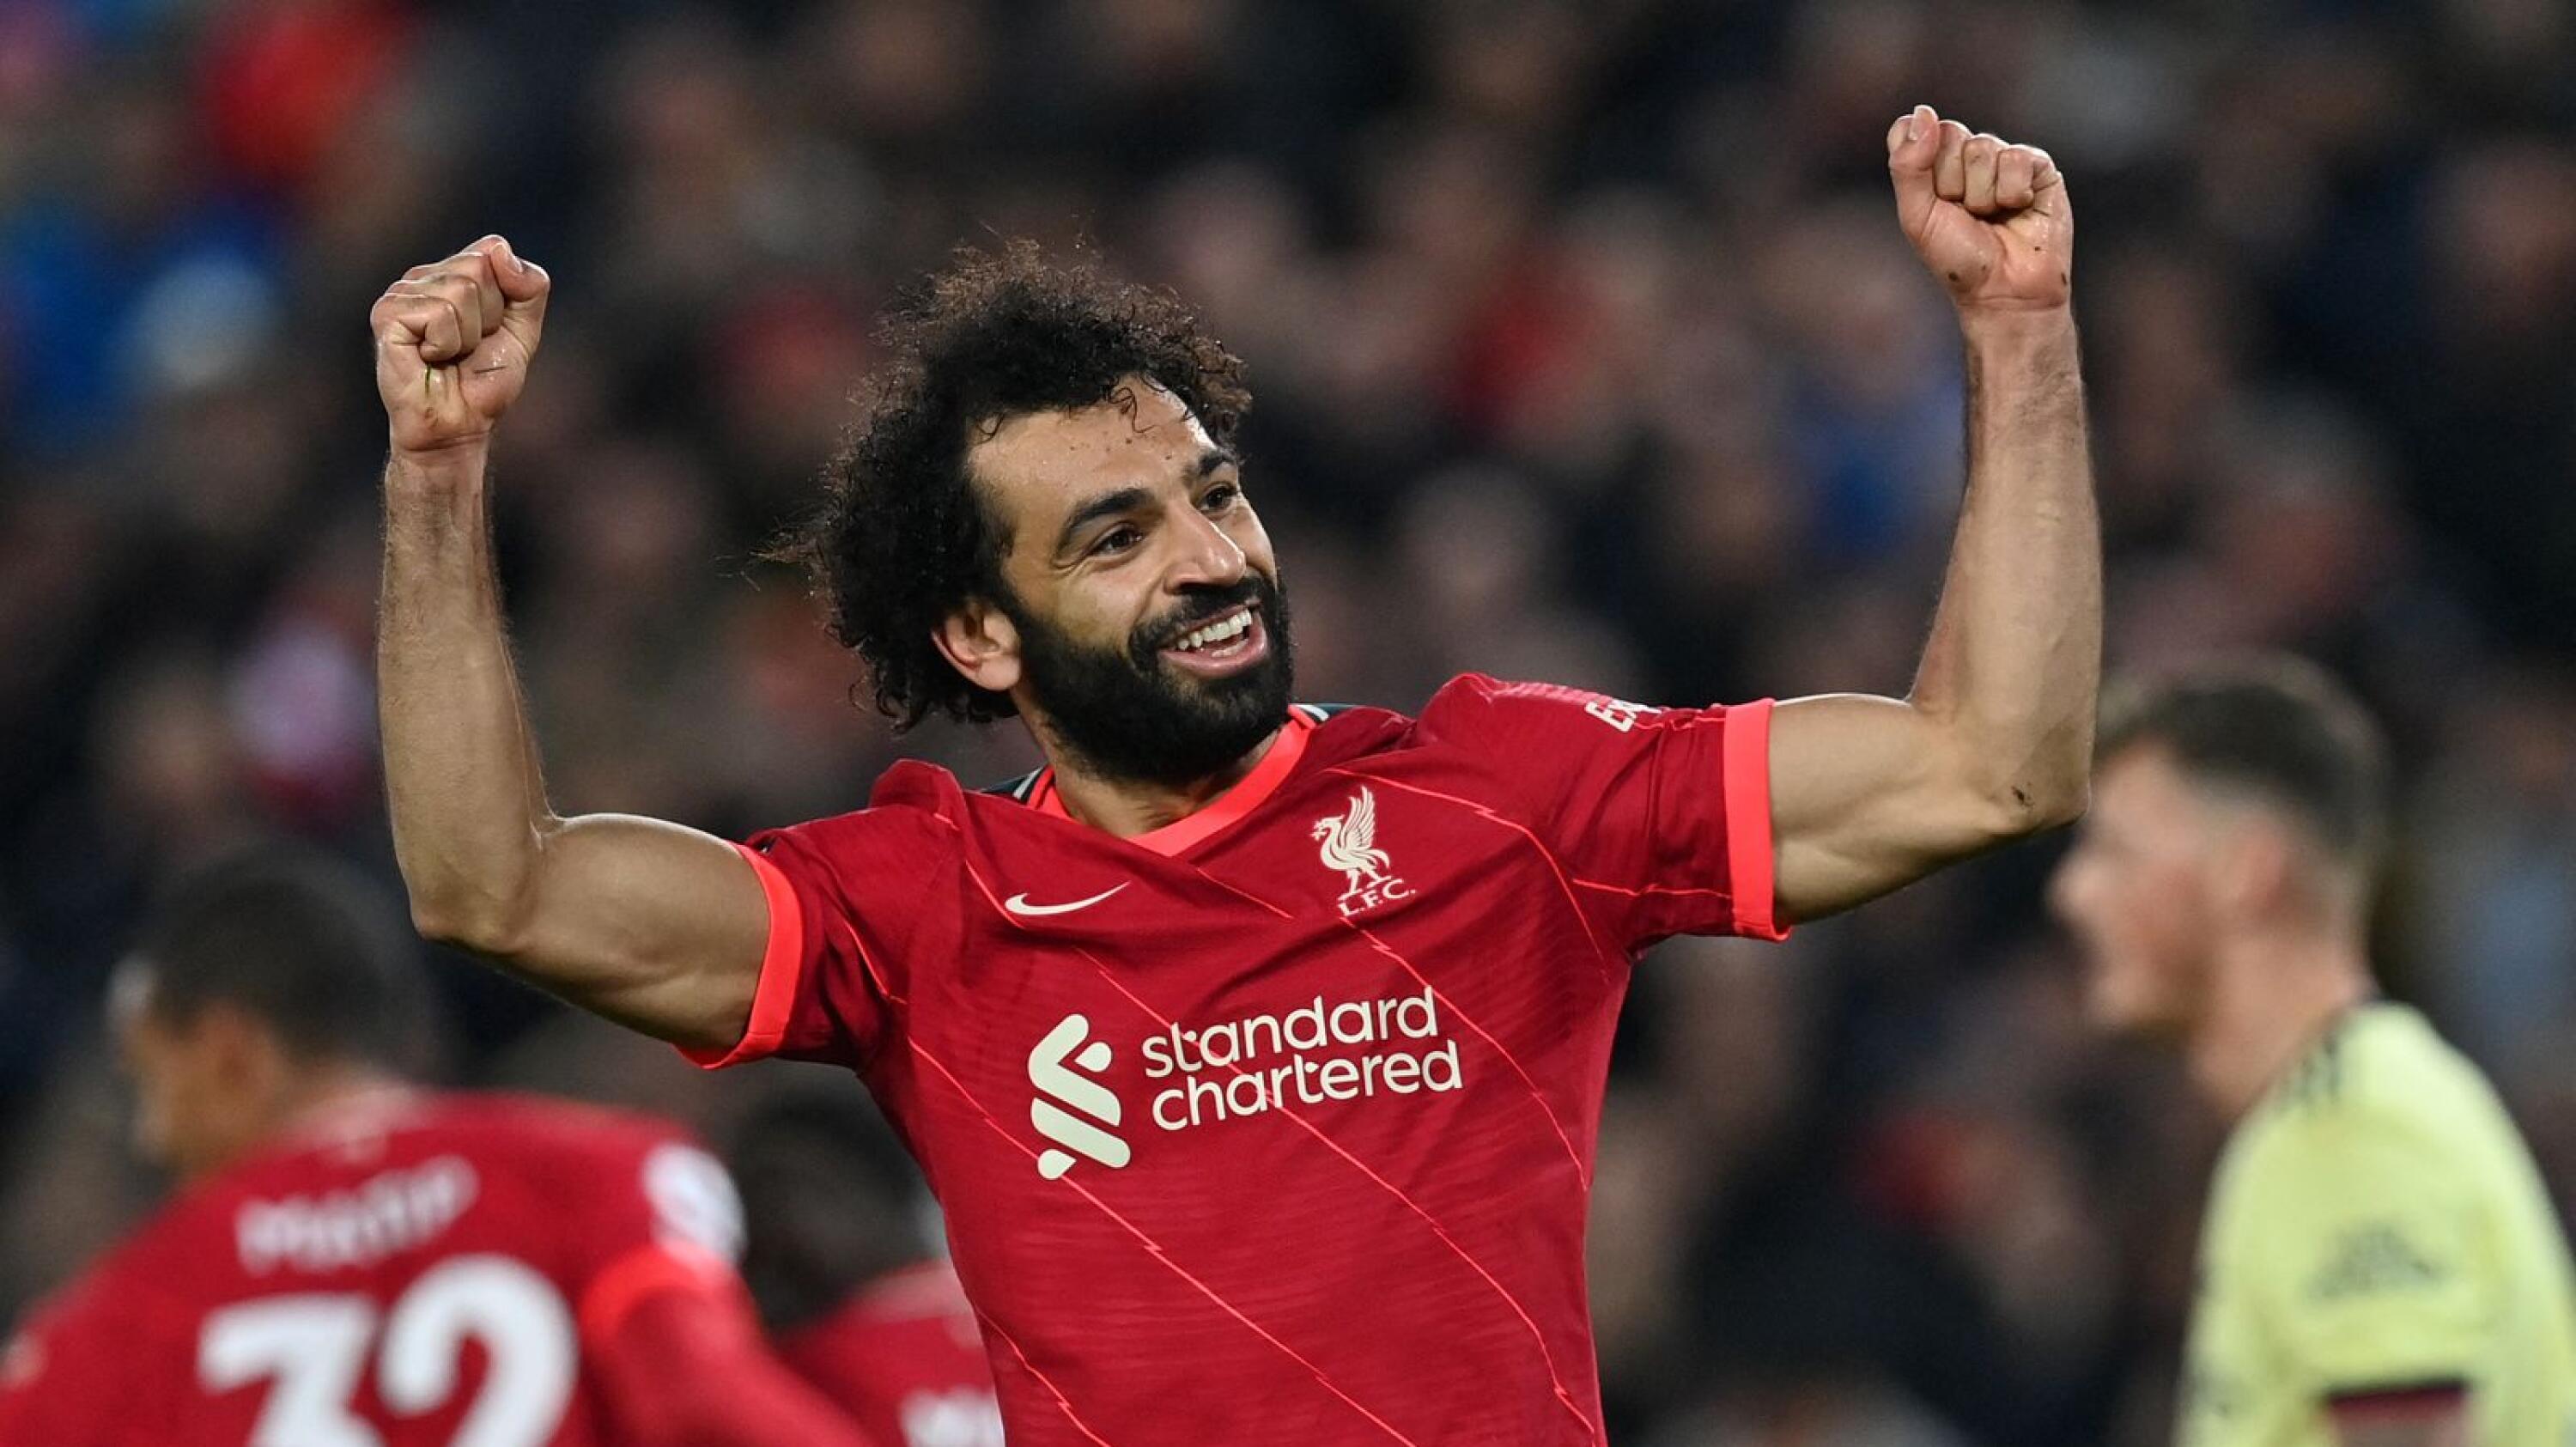 Liverpool's Egyptian forward Mohamed Salah